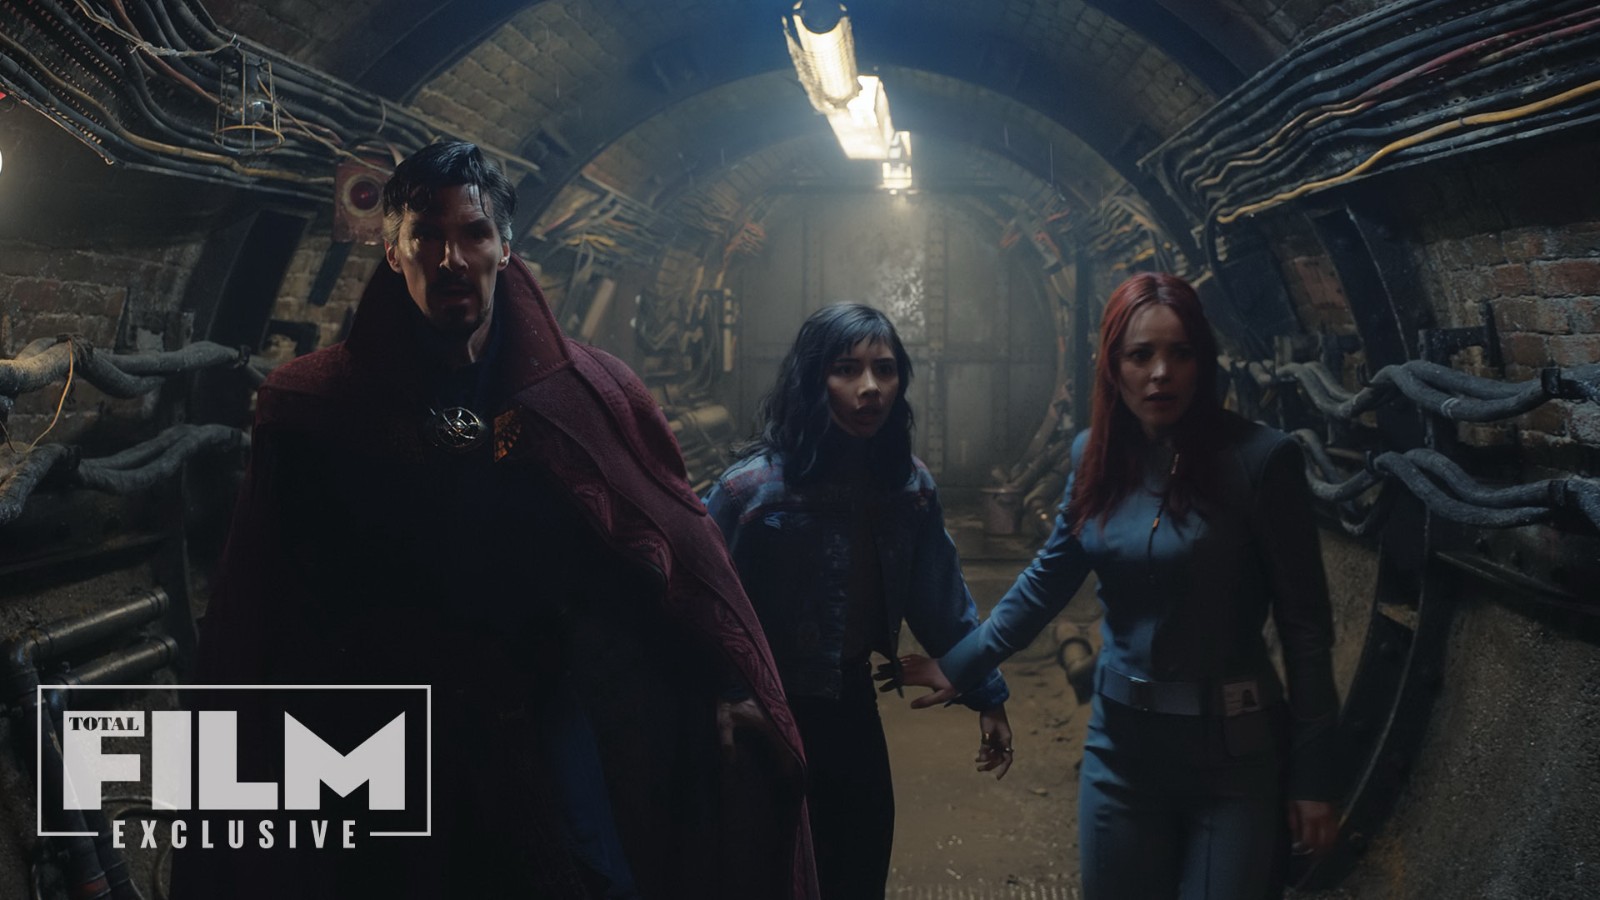 《奇异博士2》发布新预告、海报和剧照 绯红女巫回归出演